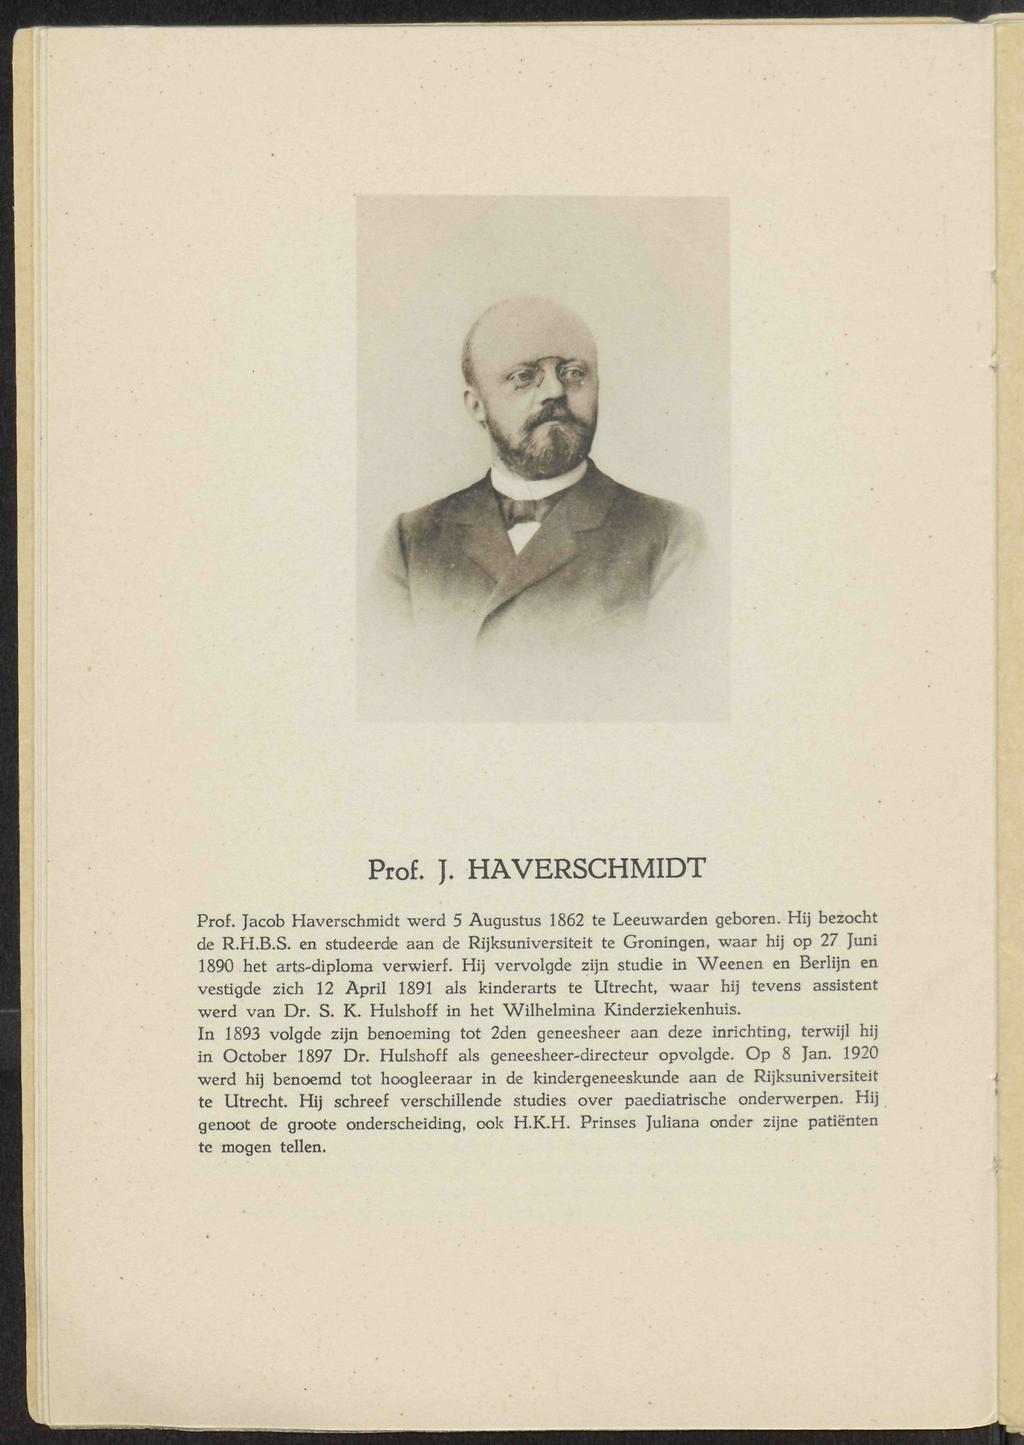 '- f& Prof. J. HAVERSCHMIDT Prof. Jacob Haverschmidt werd 5 Augustus 1862 te Leeuwarden geboren. Hij bezocht de R.H.B.S. en studeerde aan de Rijksuniversiteit te Groningen, waar hij op 27 Juni 1890 het arts-diploma verwierf.